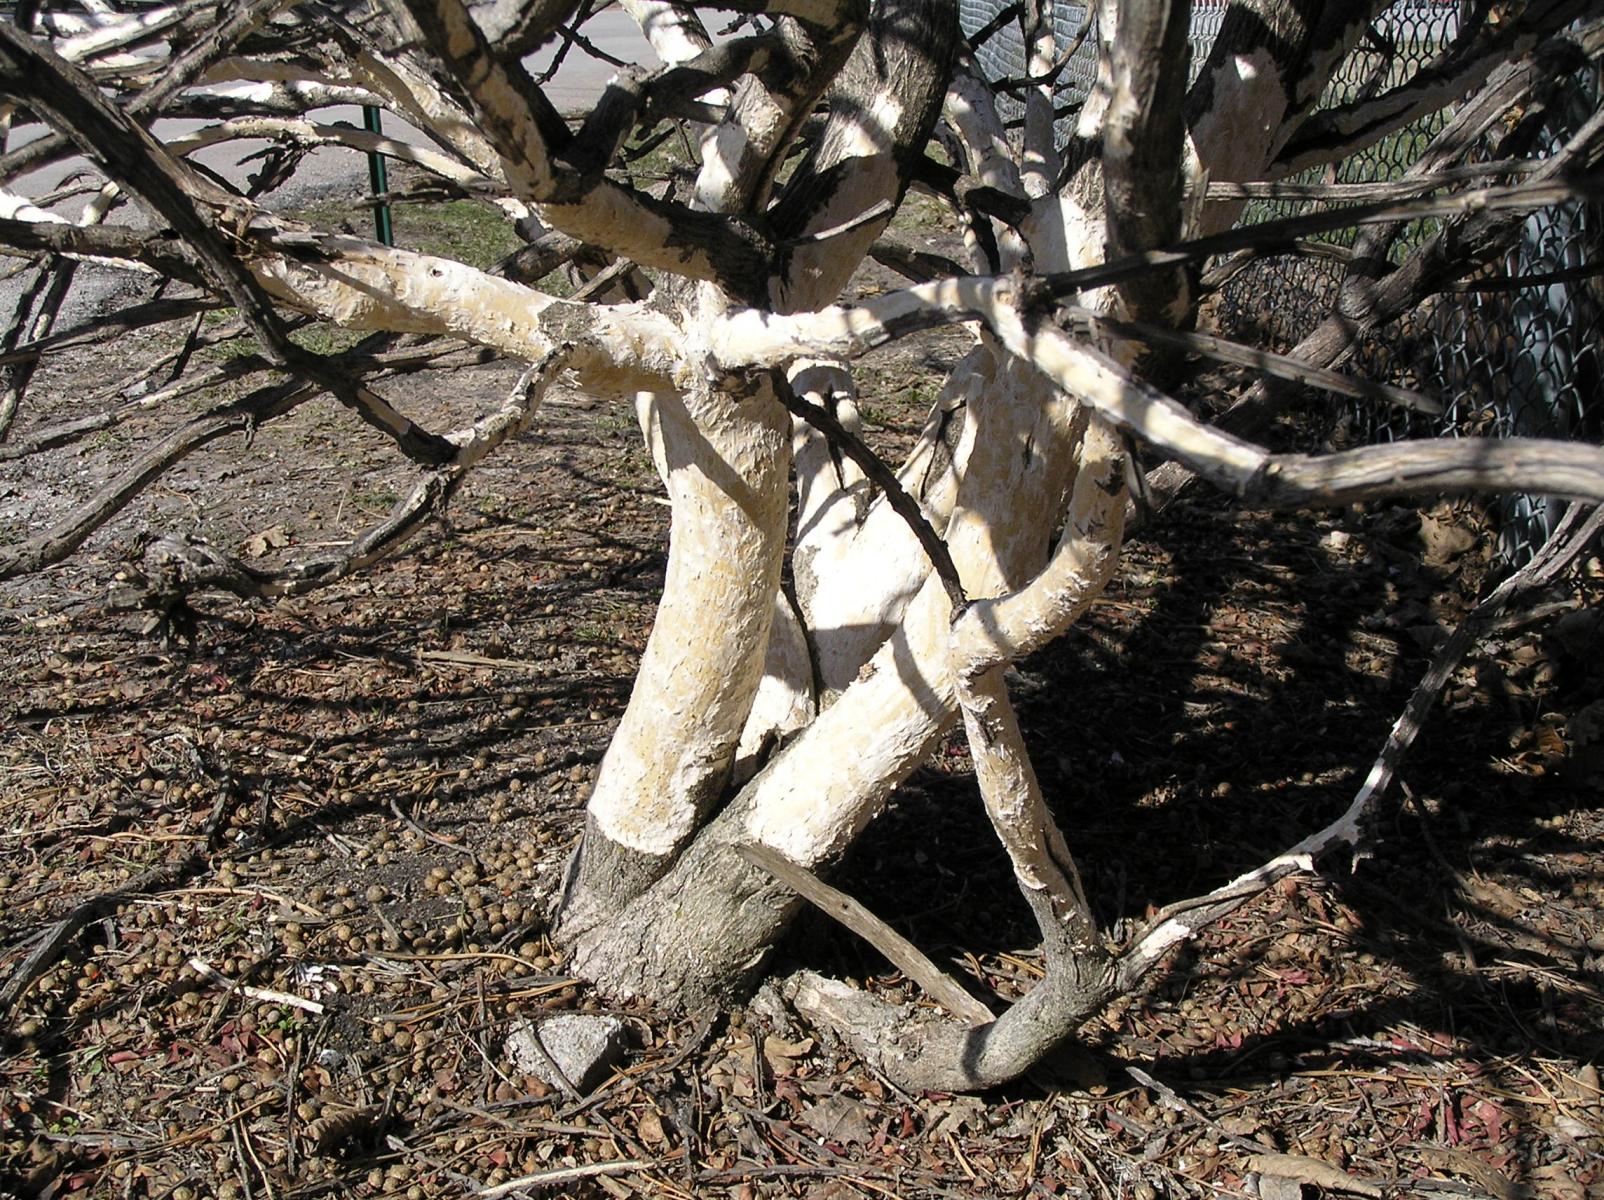 Image of rabbit damage to base of Burning bush stems. 